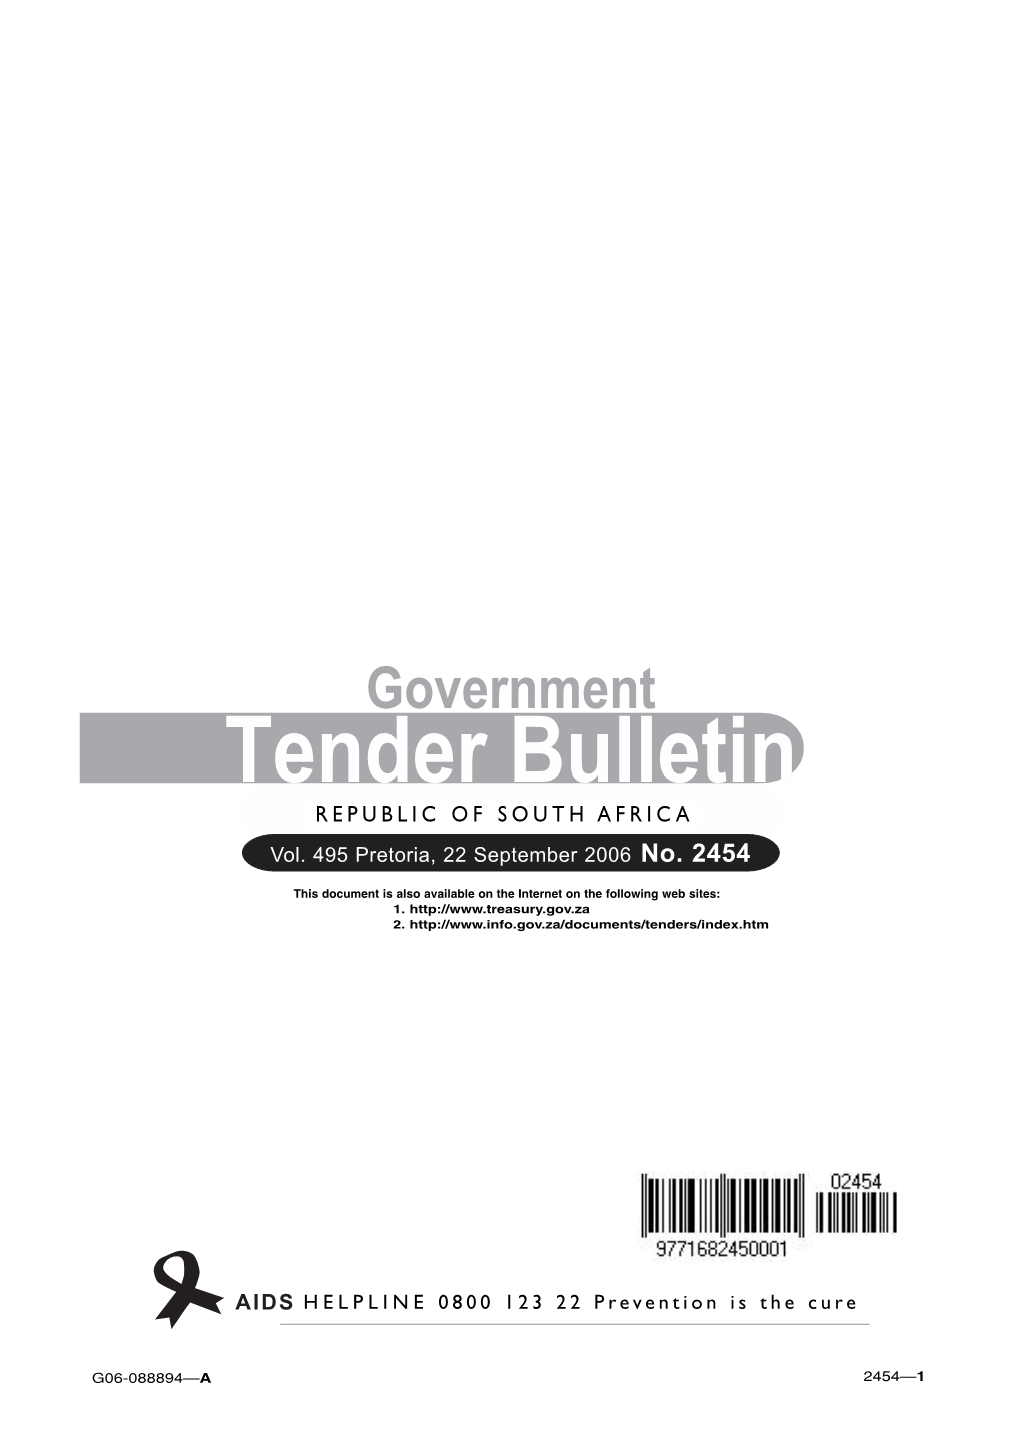 Tender Bulletin 2454